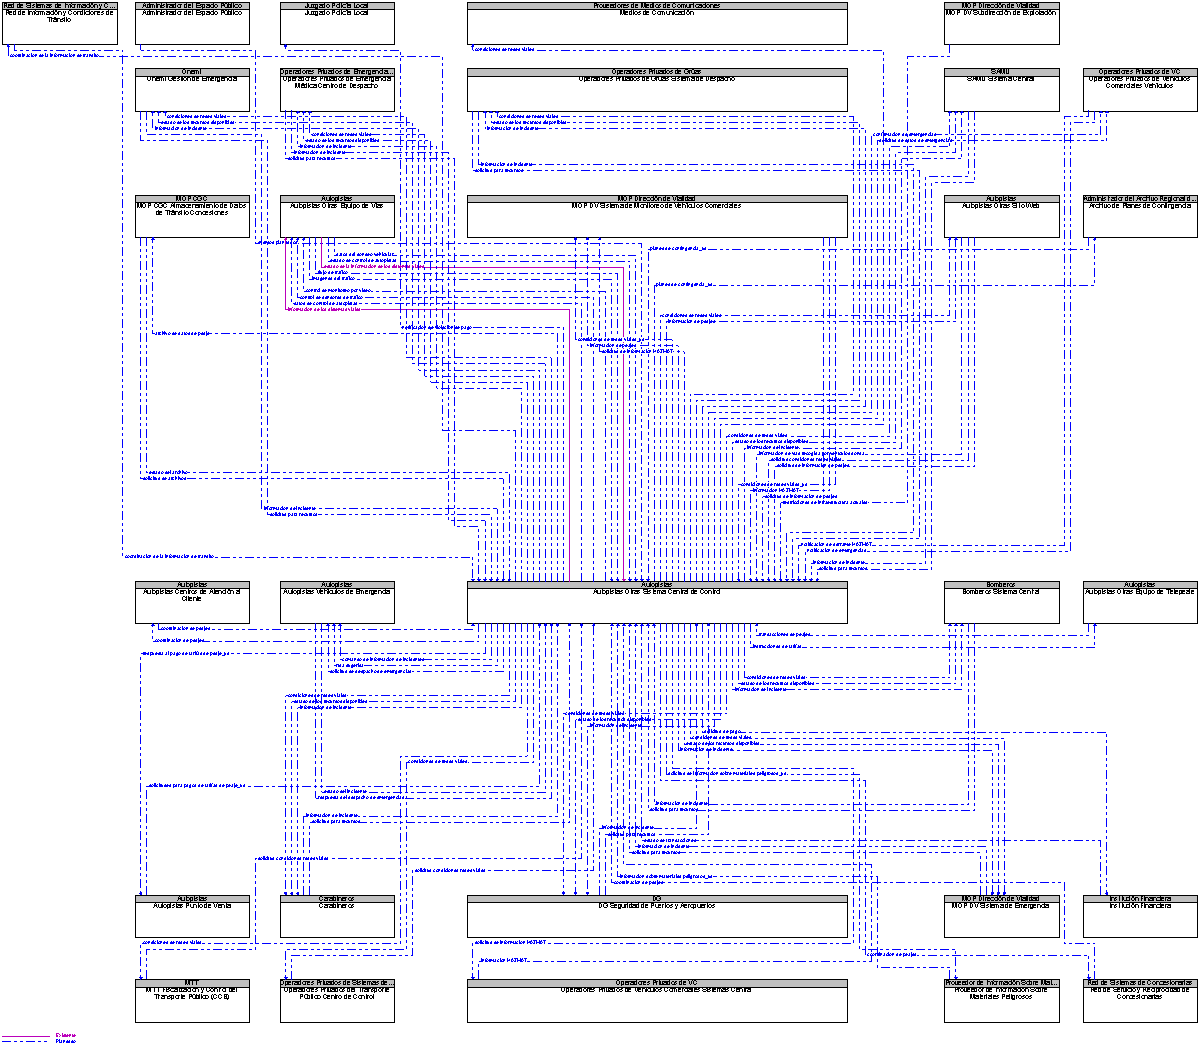 Diagrama Del Contexto por Autopistas Otras Sistema Central de Control